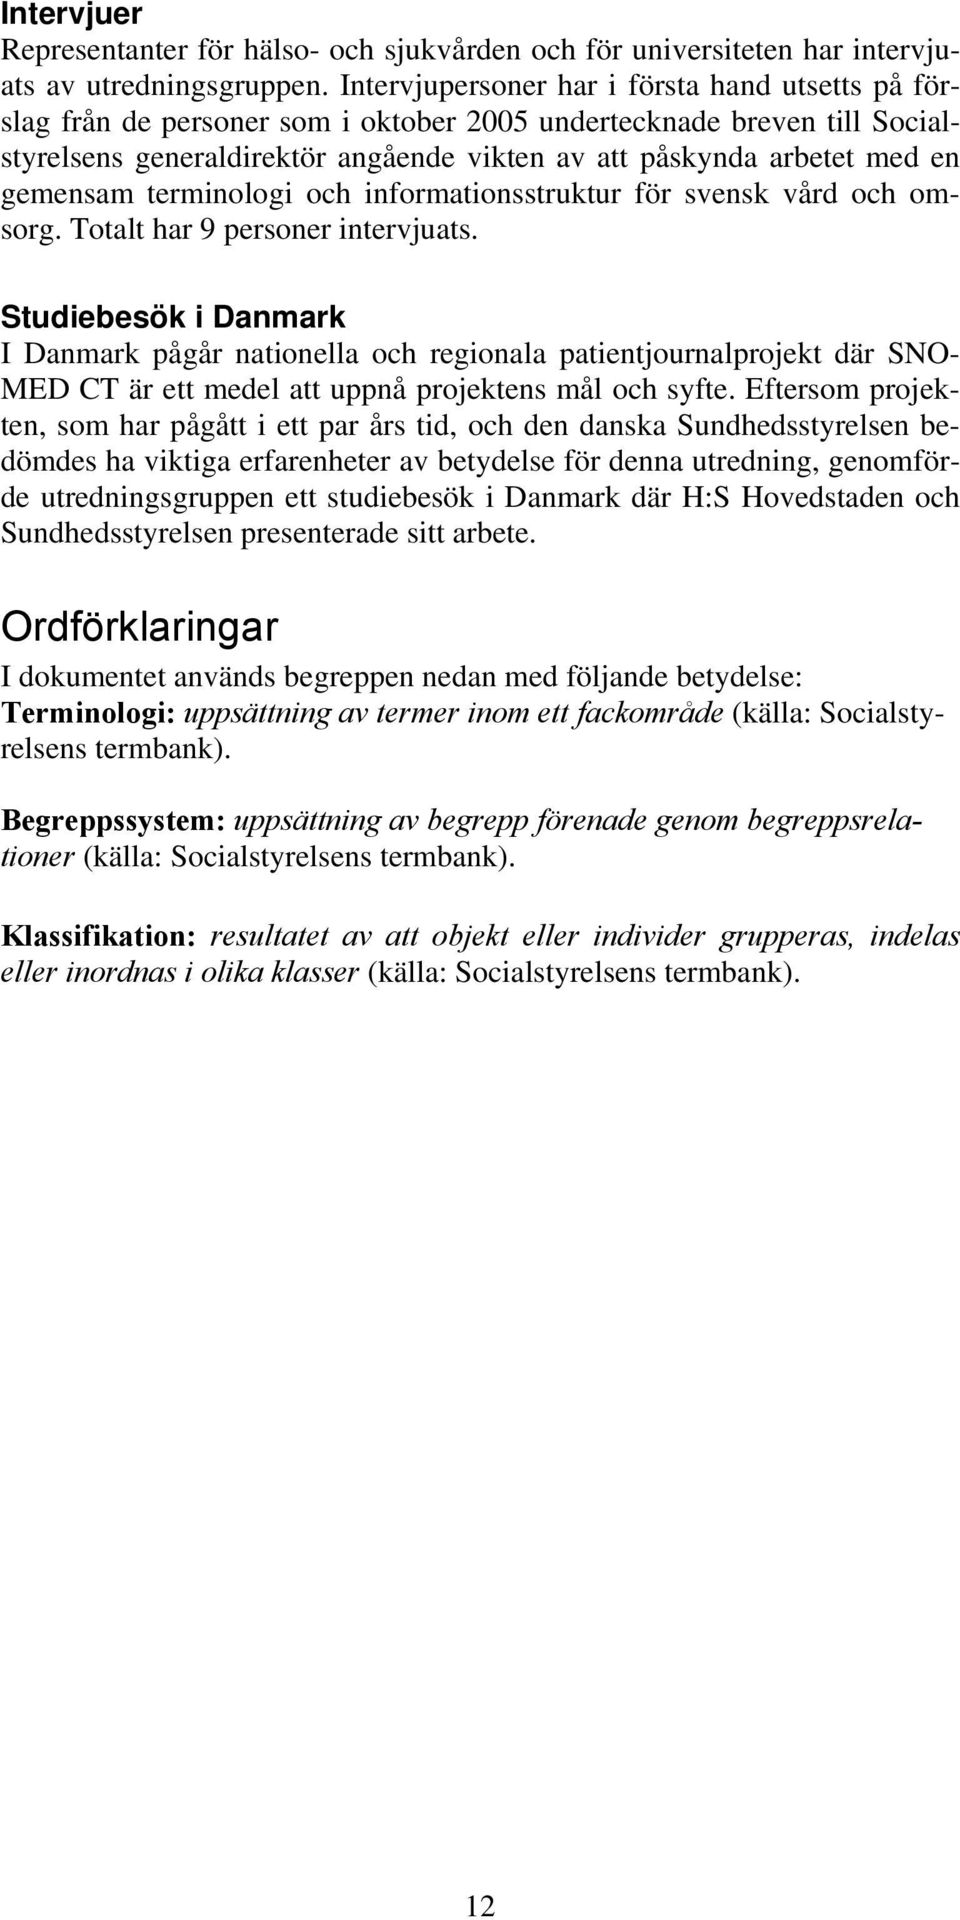 gemensam terminologi och informationsstruktur för svensk vård och omsorg. Totalt har 9 personer intervjuats.